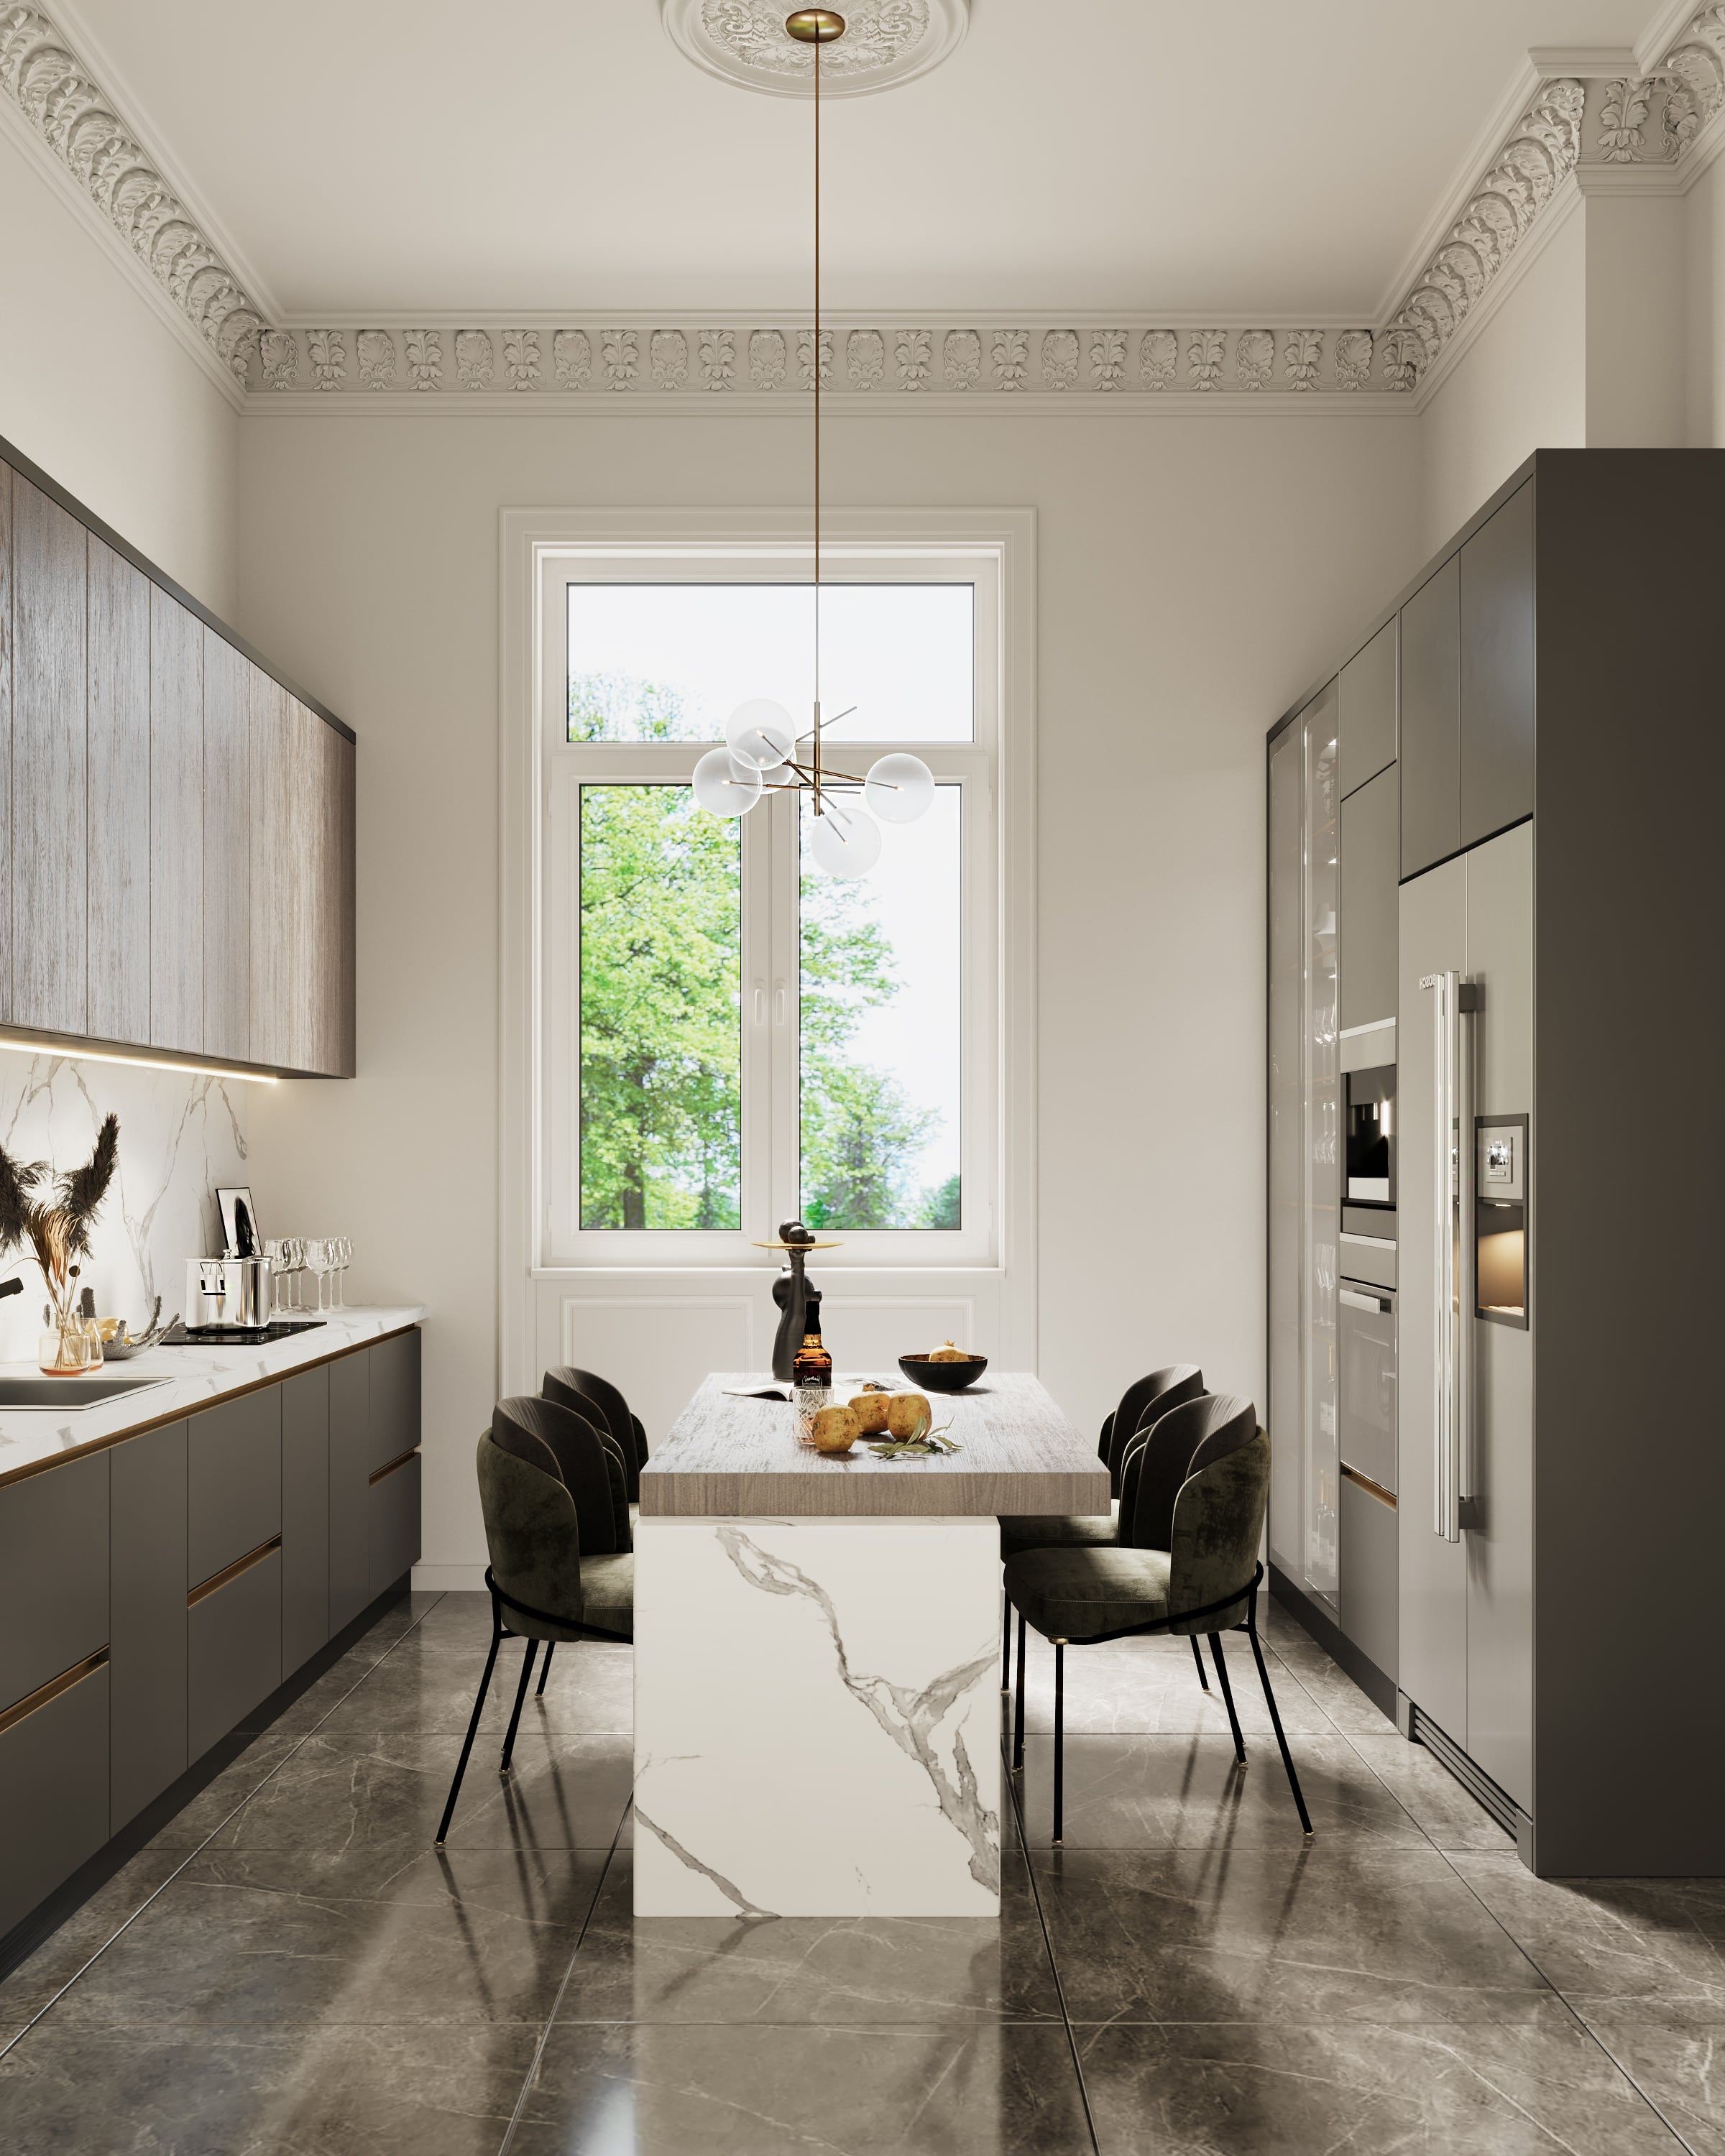 3D Innenvisualisierung der Küche mit Kücheninsel in einer renovierten historischen Wohnung in der Fliederstraße, Hamburg